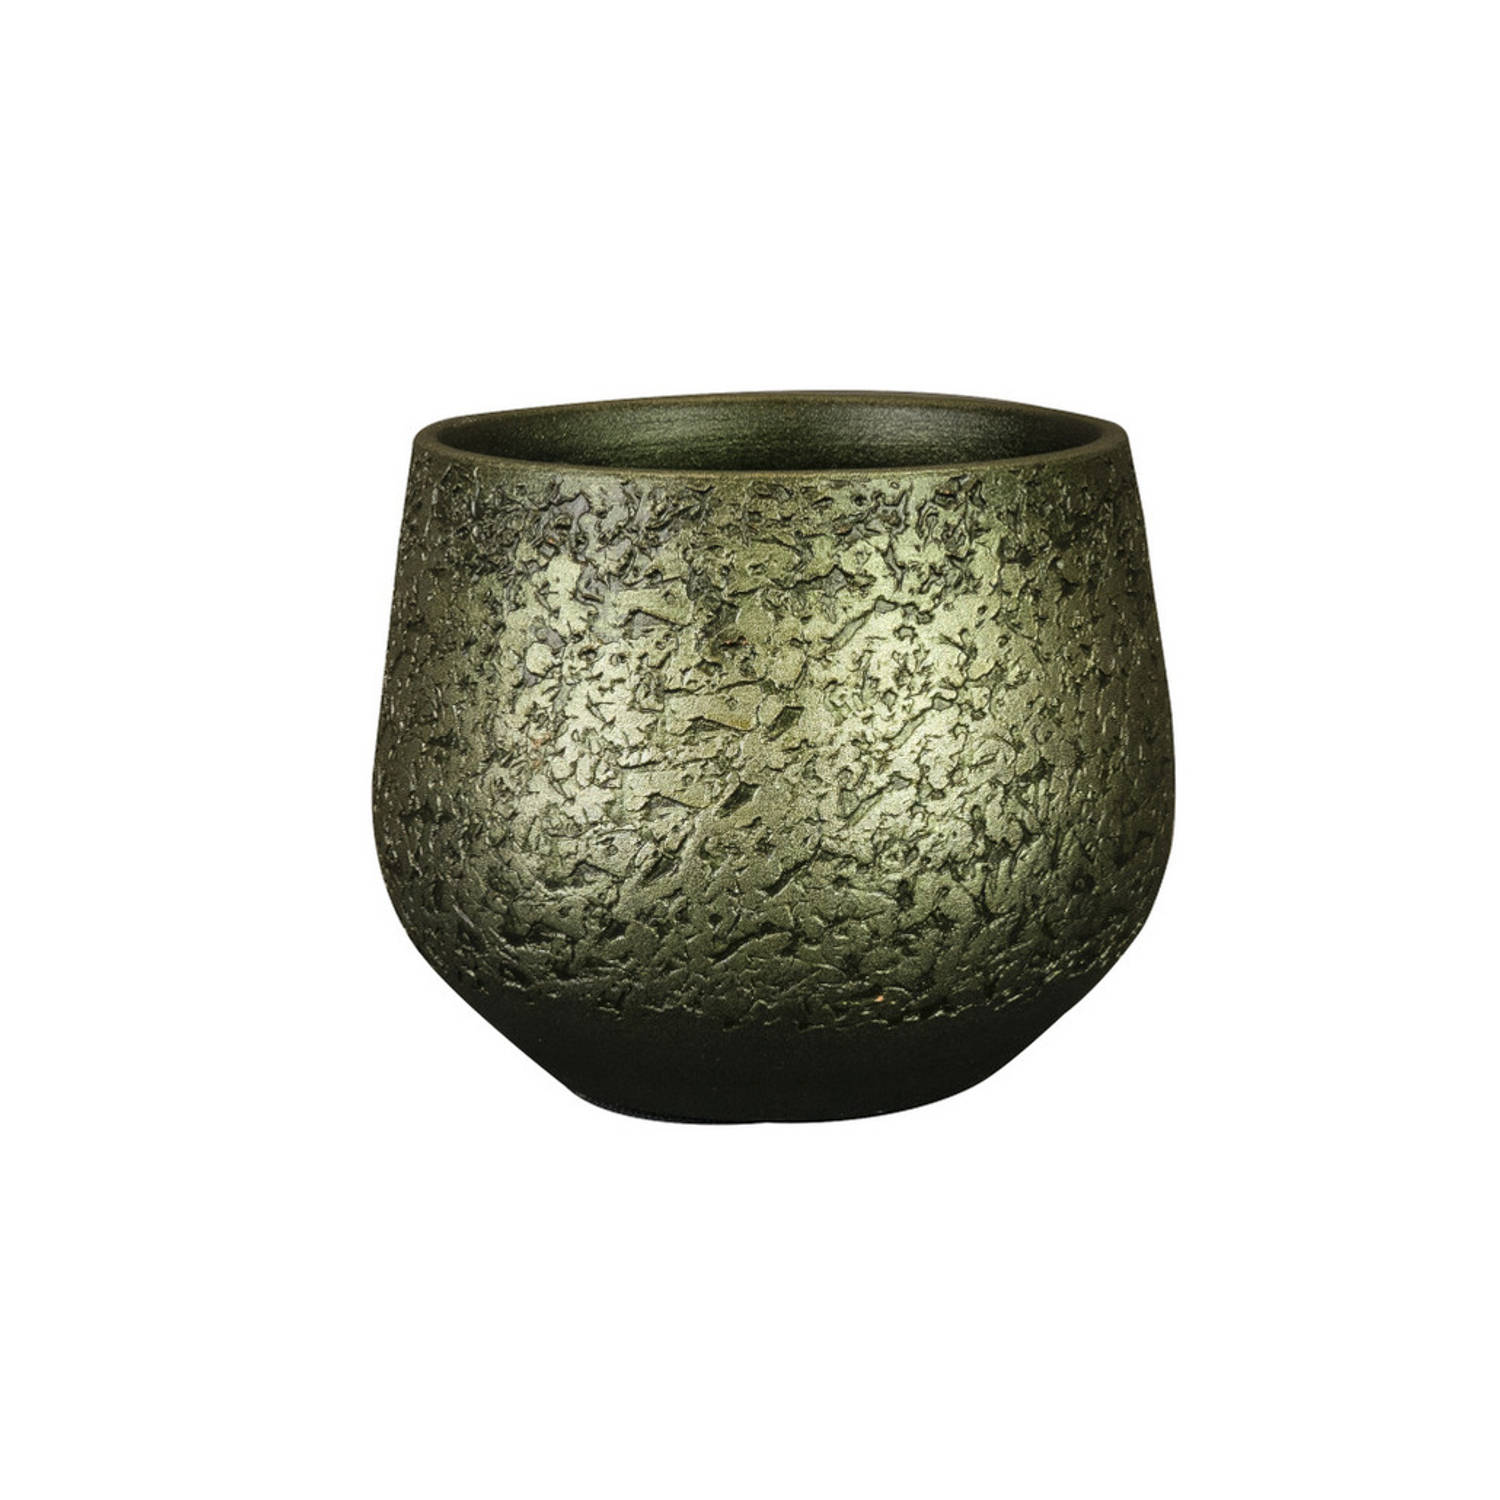 Steege Plantenpot/bloempot - keramiek - metallic donkergroen/touch of gold - D16/H13 cm